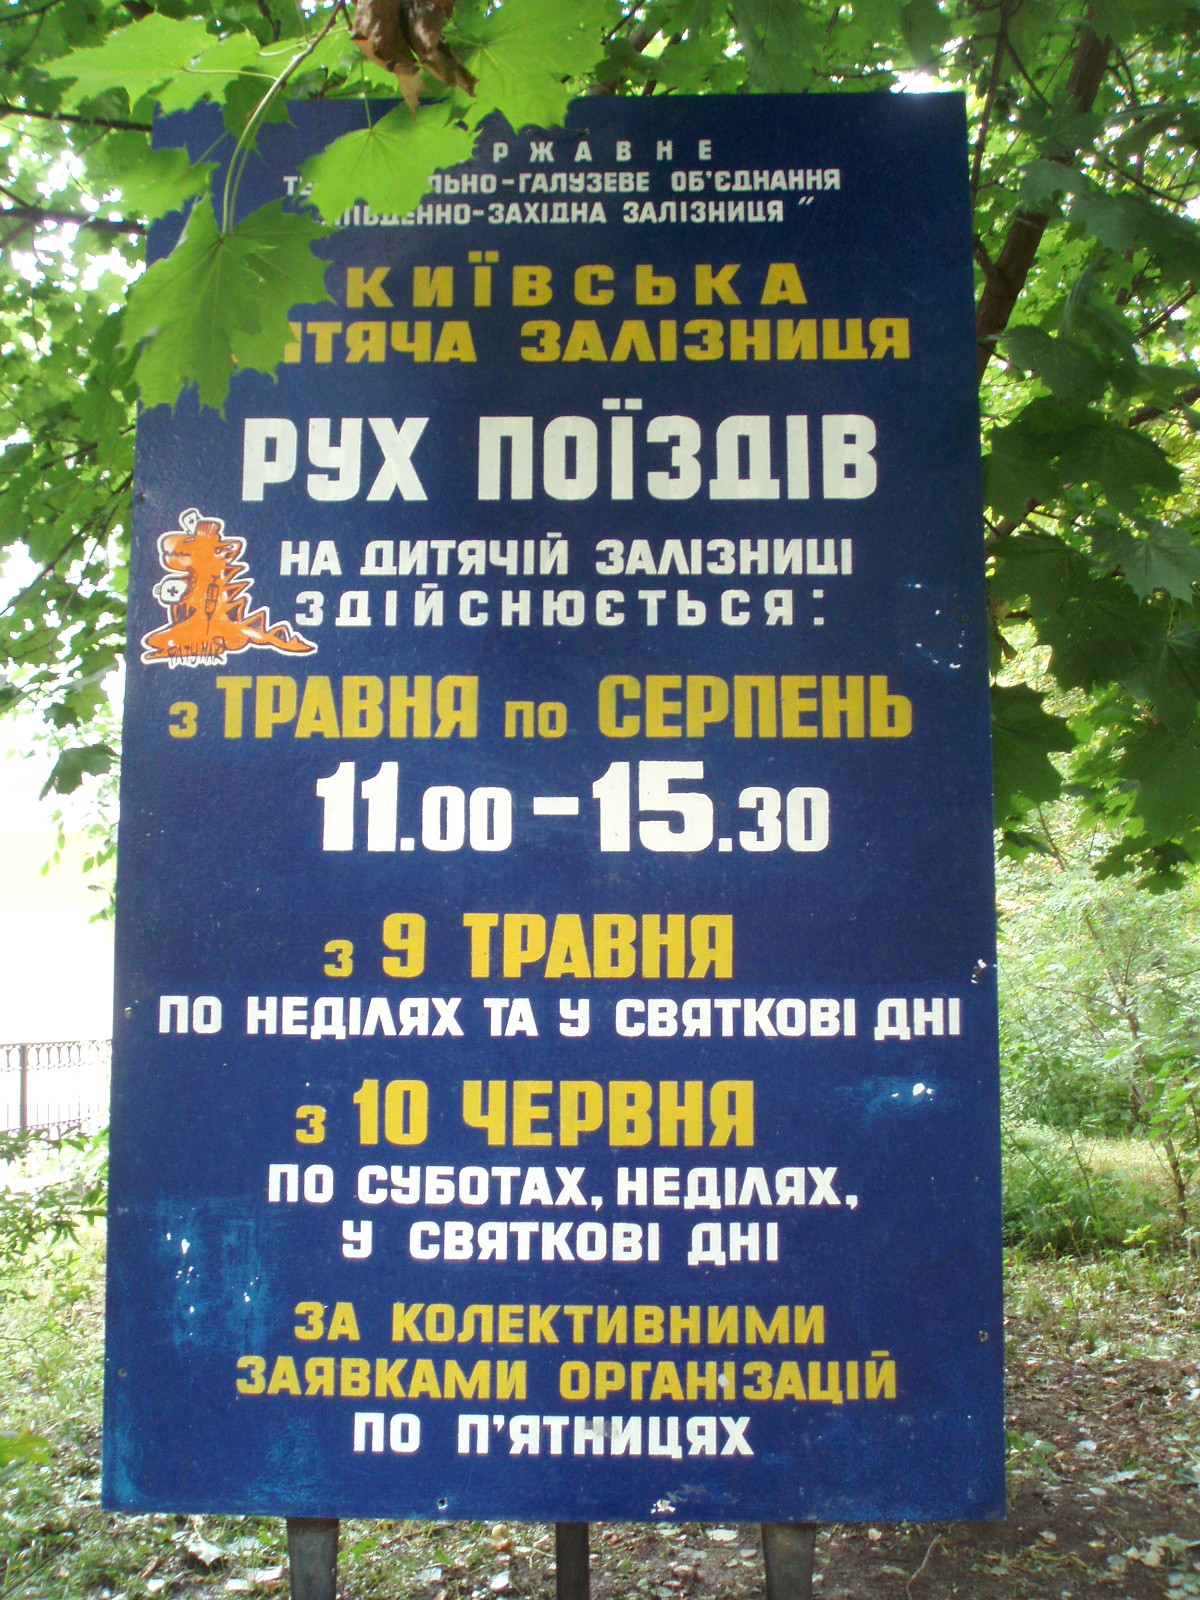 Малая Юго-Западная (Киевская) детская железная дорога  —  фотографии, сделанные в 2007 году (часть 1)